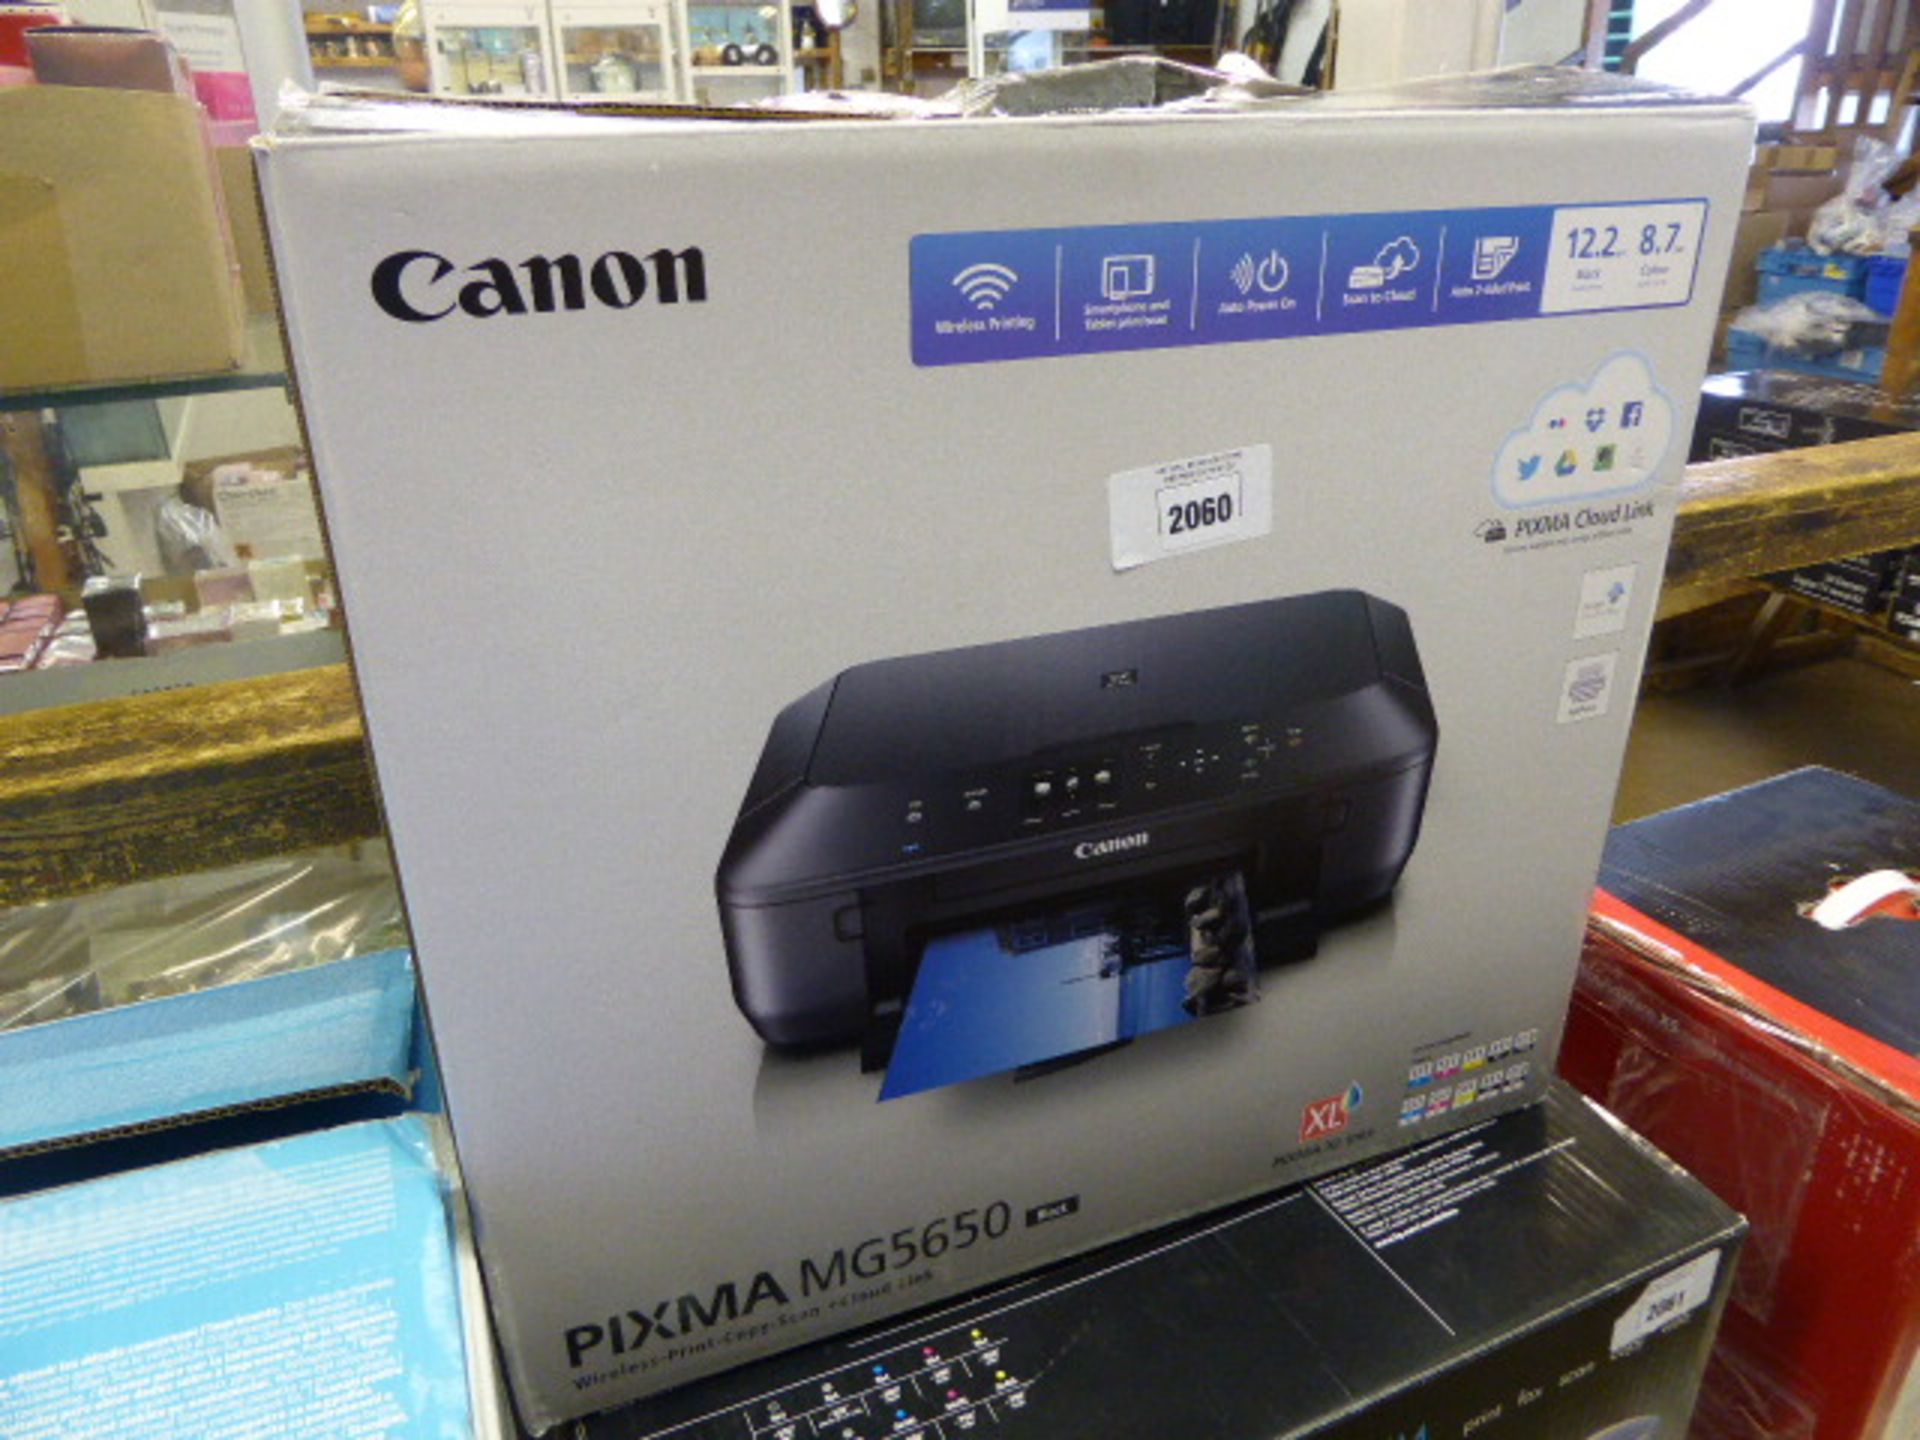 Canon Pixma MG5650 wireless all in one printer in box